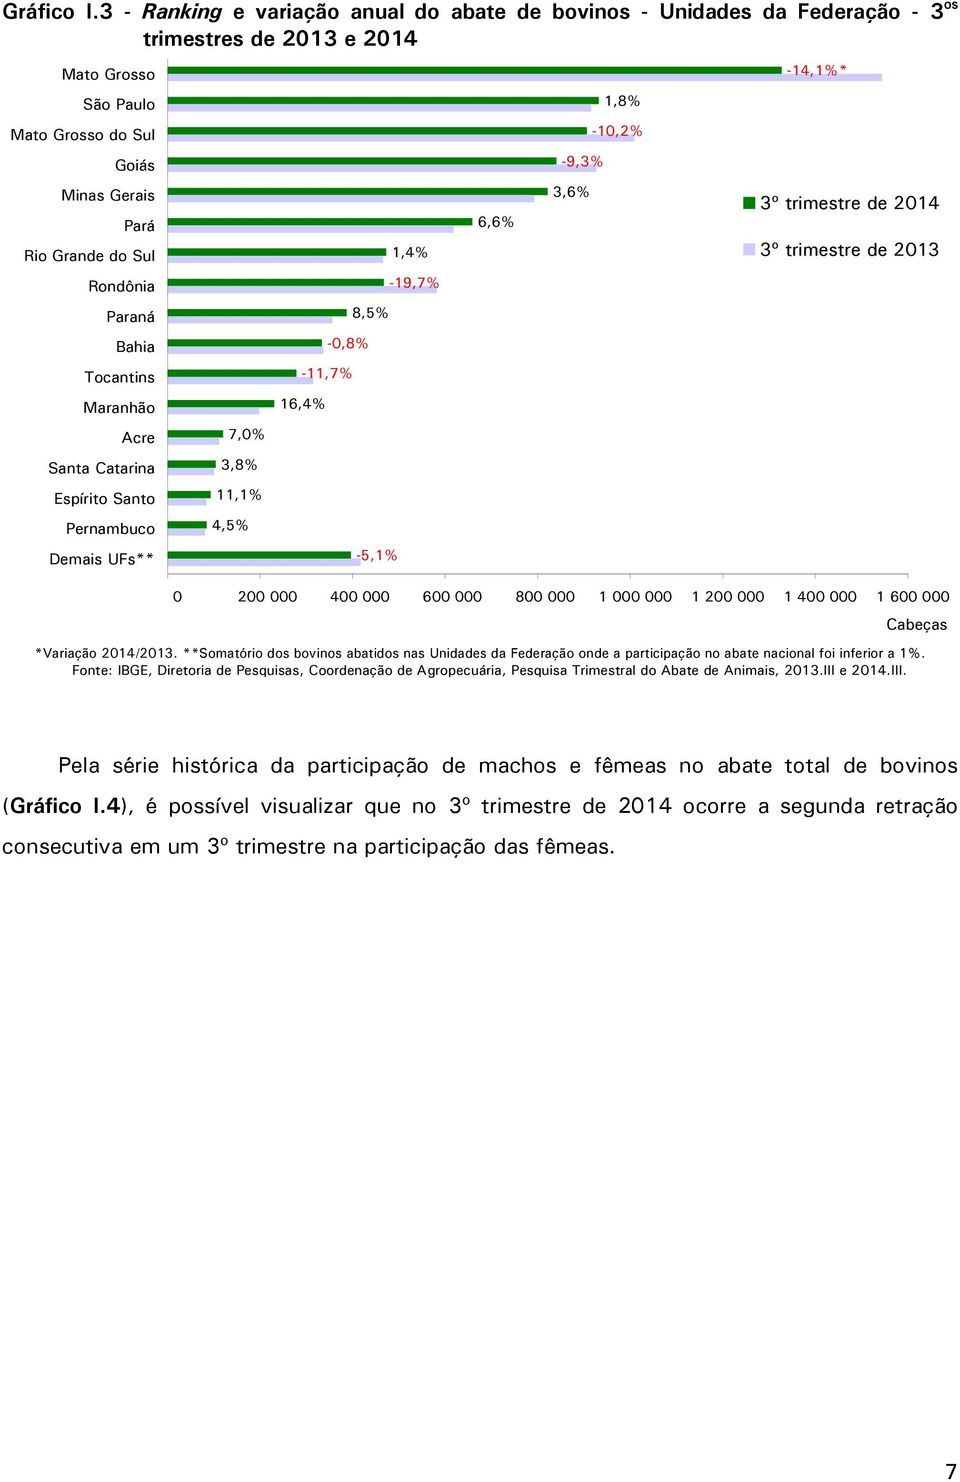 Paraná Bahia Tocantins Maranhão Acre Santa Catarina Espírito Santo Pernambuco Demais UFs** 7,0% 3,8% 11,1% 4,5% -11,7% 16,4% -0,8% 8,5% -5,1% 1,4% -19,7% 6,6% -9,3% 3,6% 1,8% -10,2% -14,1%* 3º